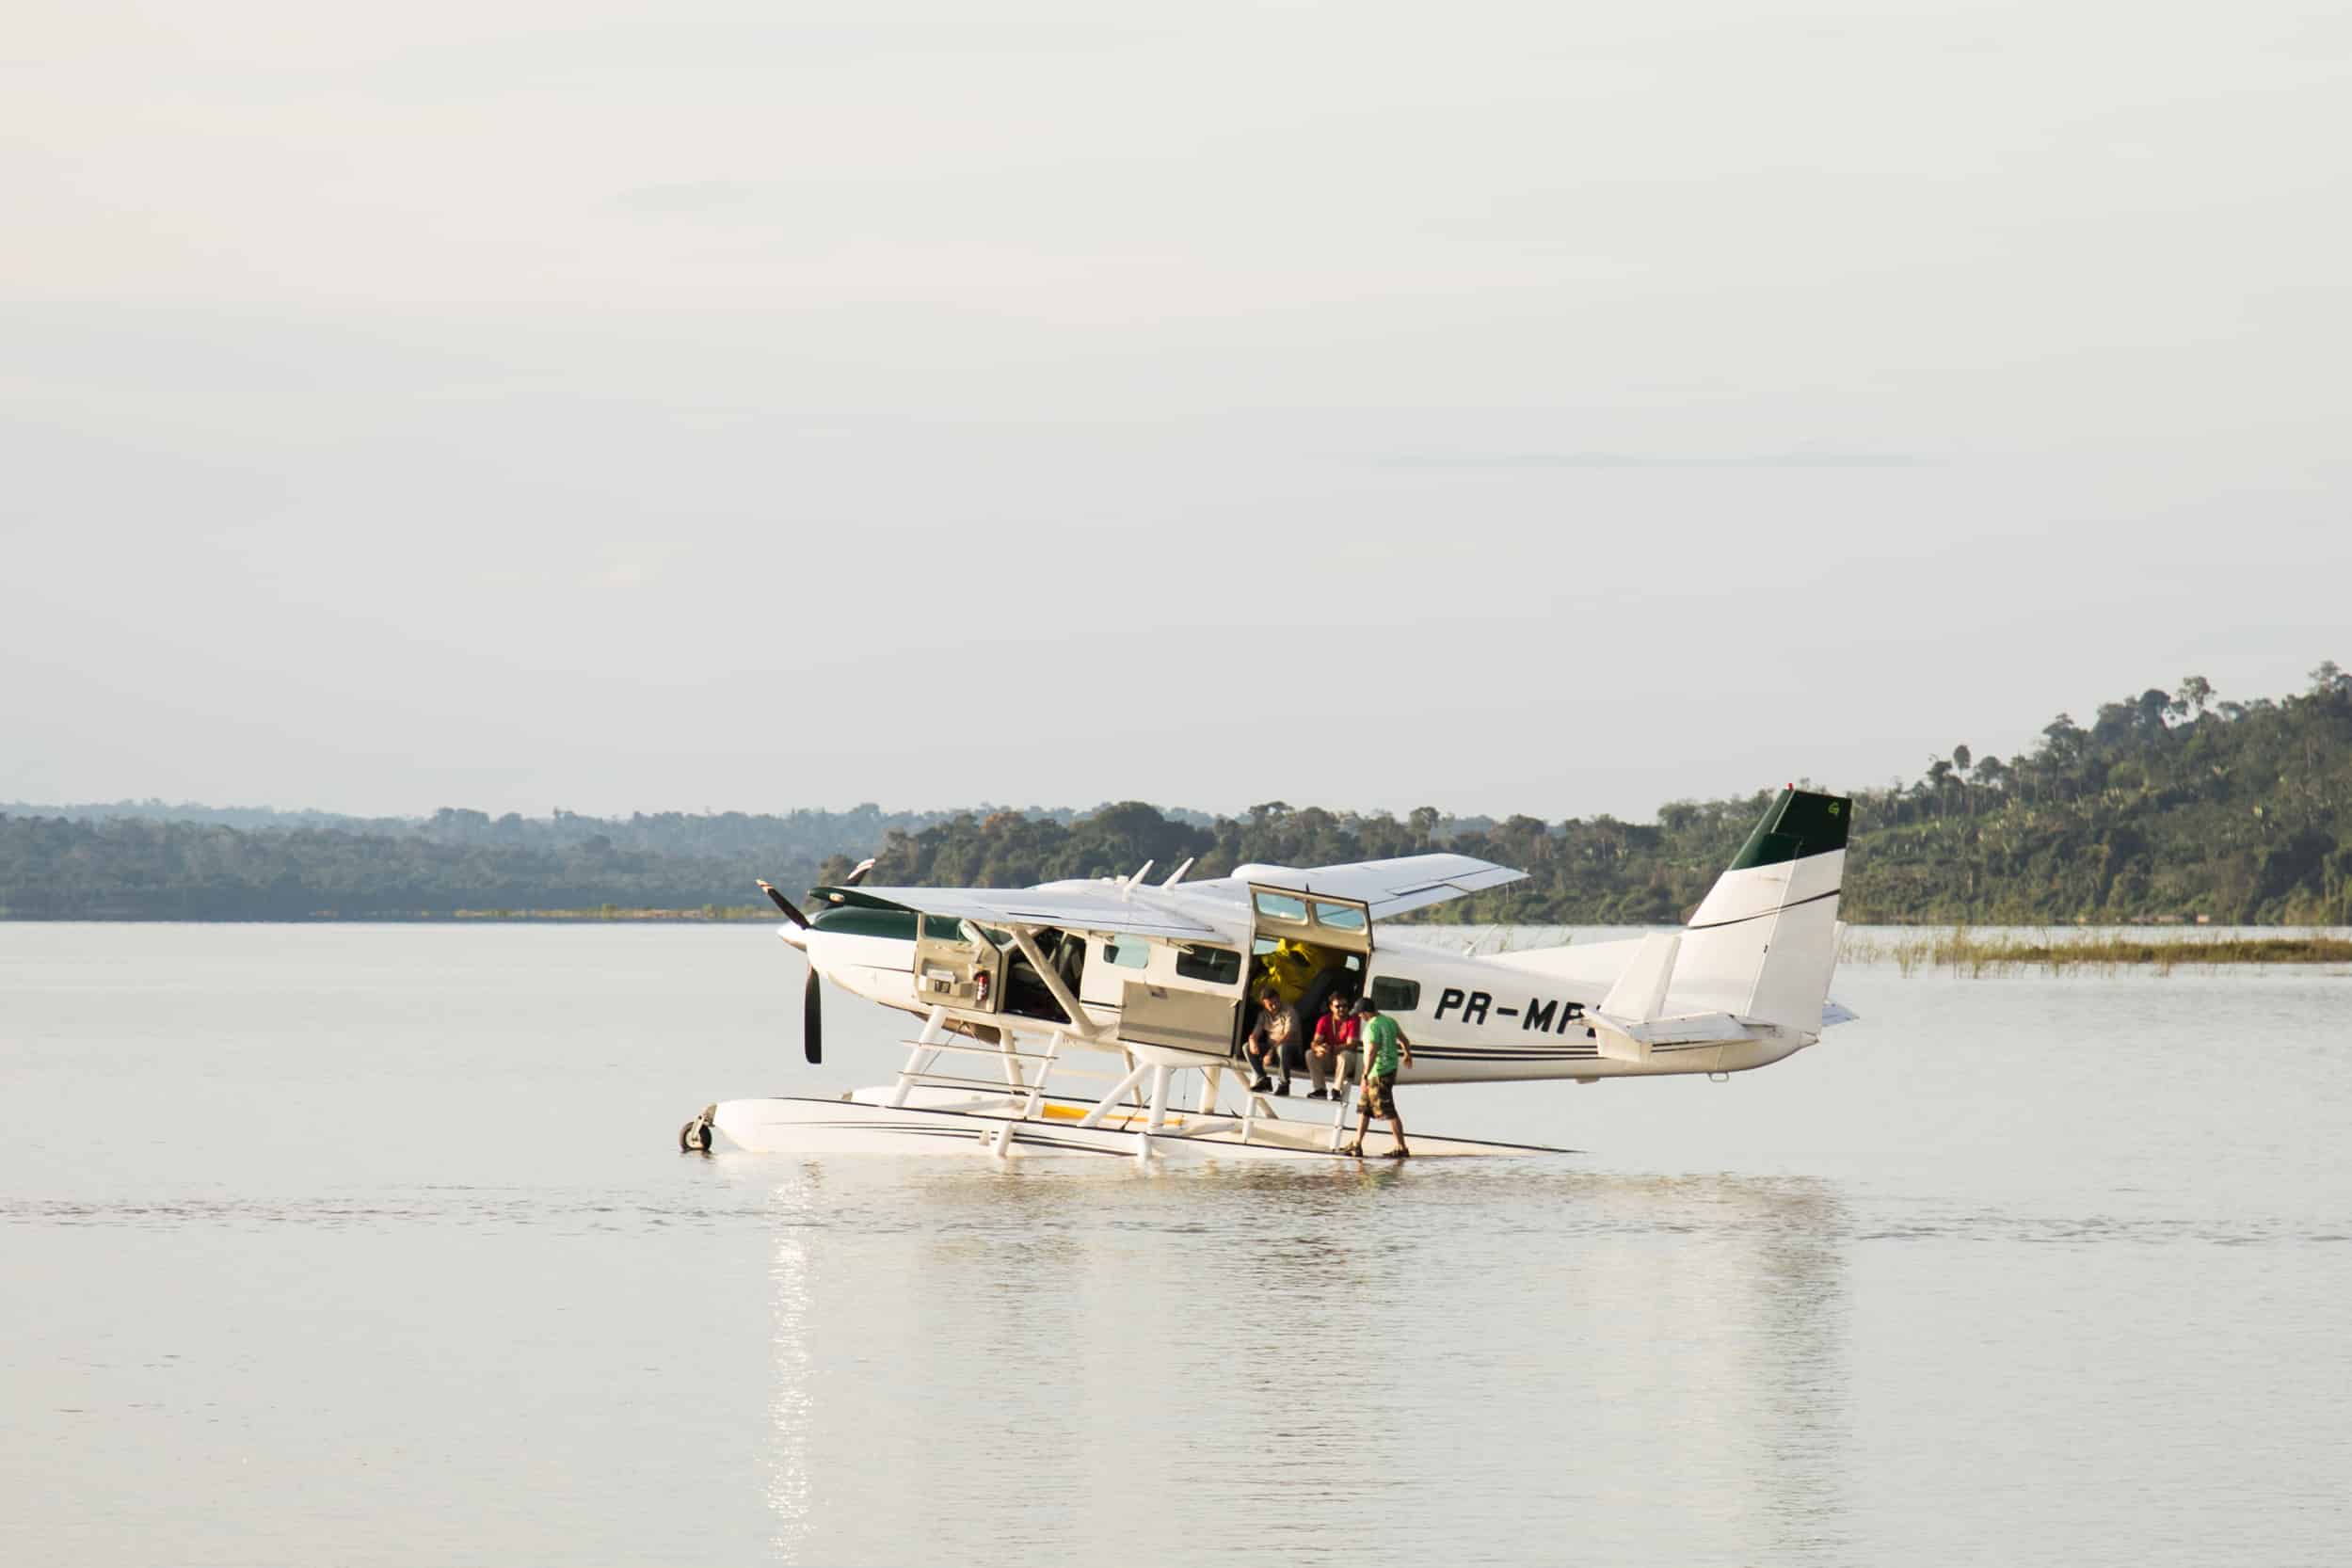 Überflug über den Tapajos Fluss im brasilianischen Amazonas-Gebiet mit dem neuen Greenpeace Wasserflugzeug, einer Cessna 208 mit 10 Sitzen. © Jannes Stoppel / Greenpeace